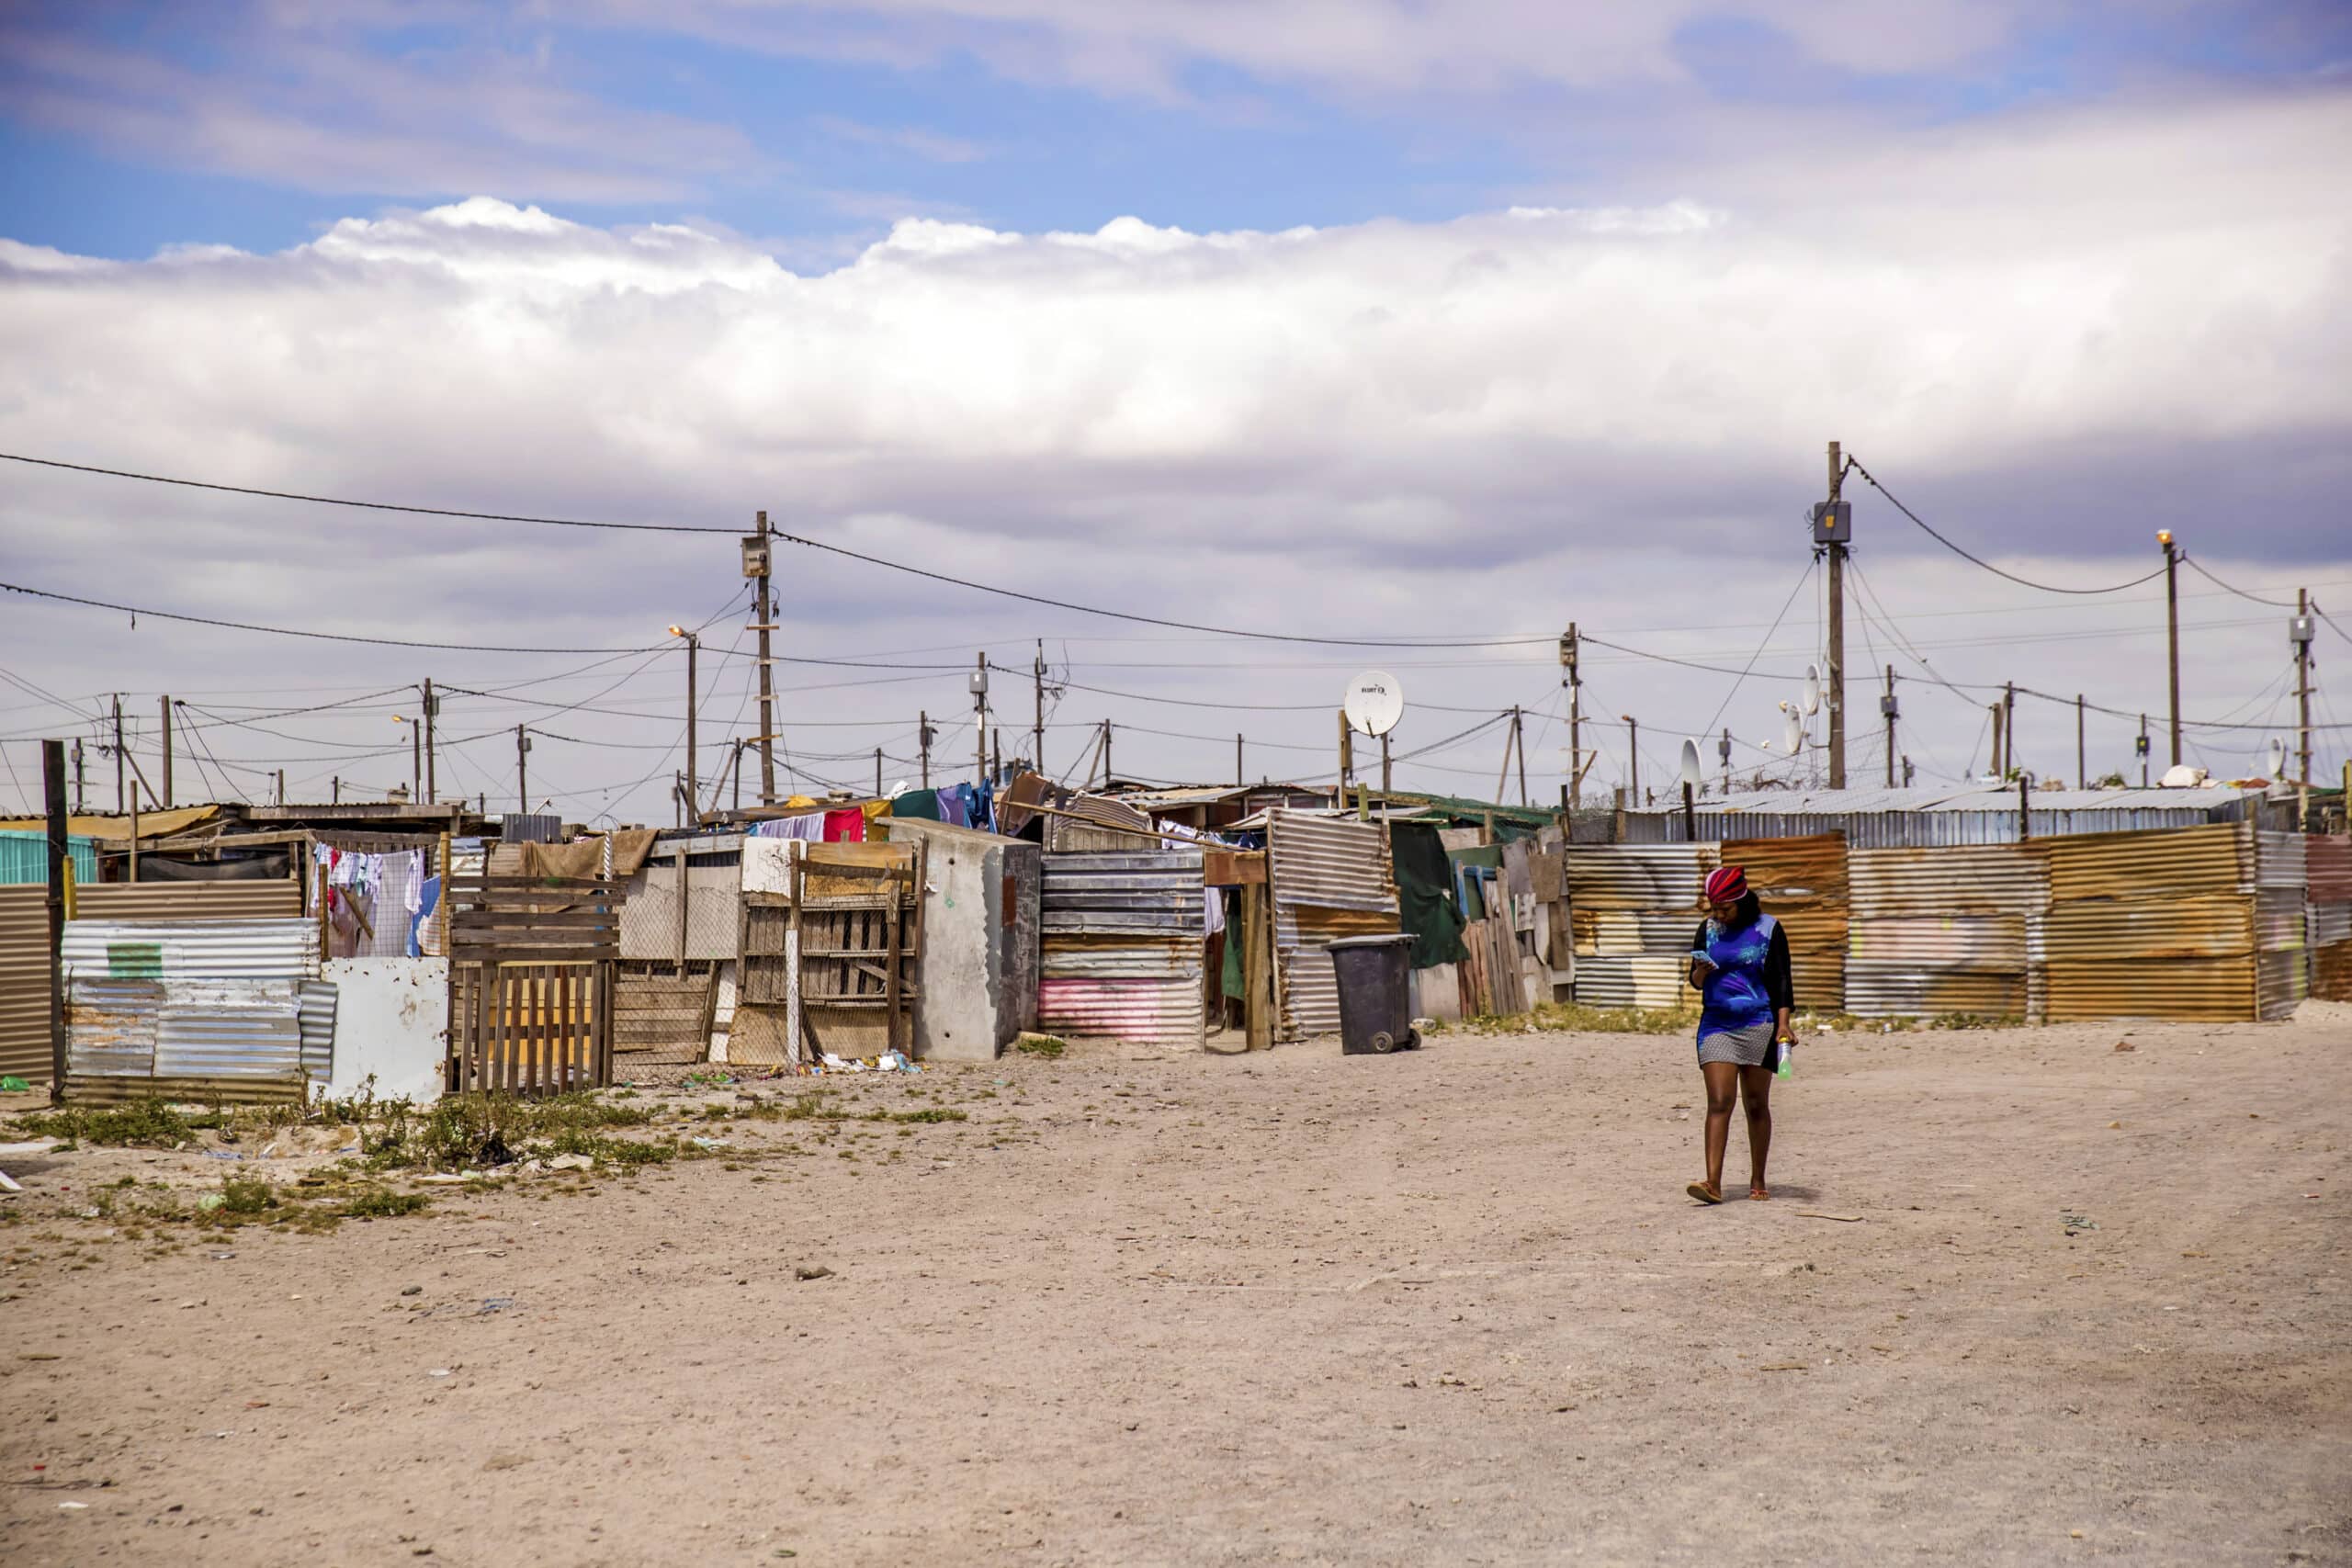 Eine Frau geht unter einem bewölkten Himmel durch eine weitläufige informelle Siedlung mit provisorischen Behausungen aus Wellblech und anderen Materialien. Auf einigen Hütten sind Satellitenschüsseln zu sehen. © Fotografie Tomas Rodriguez